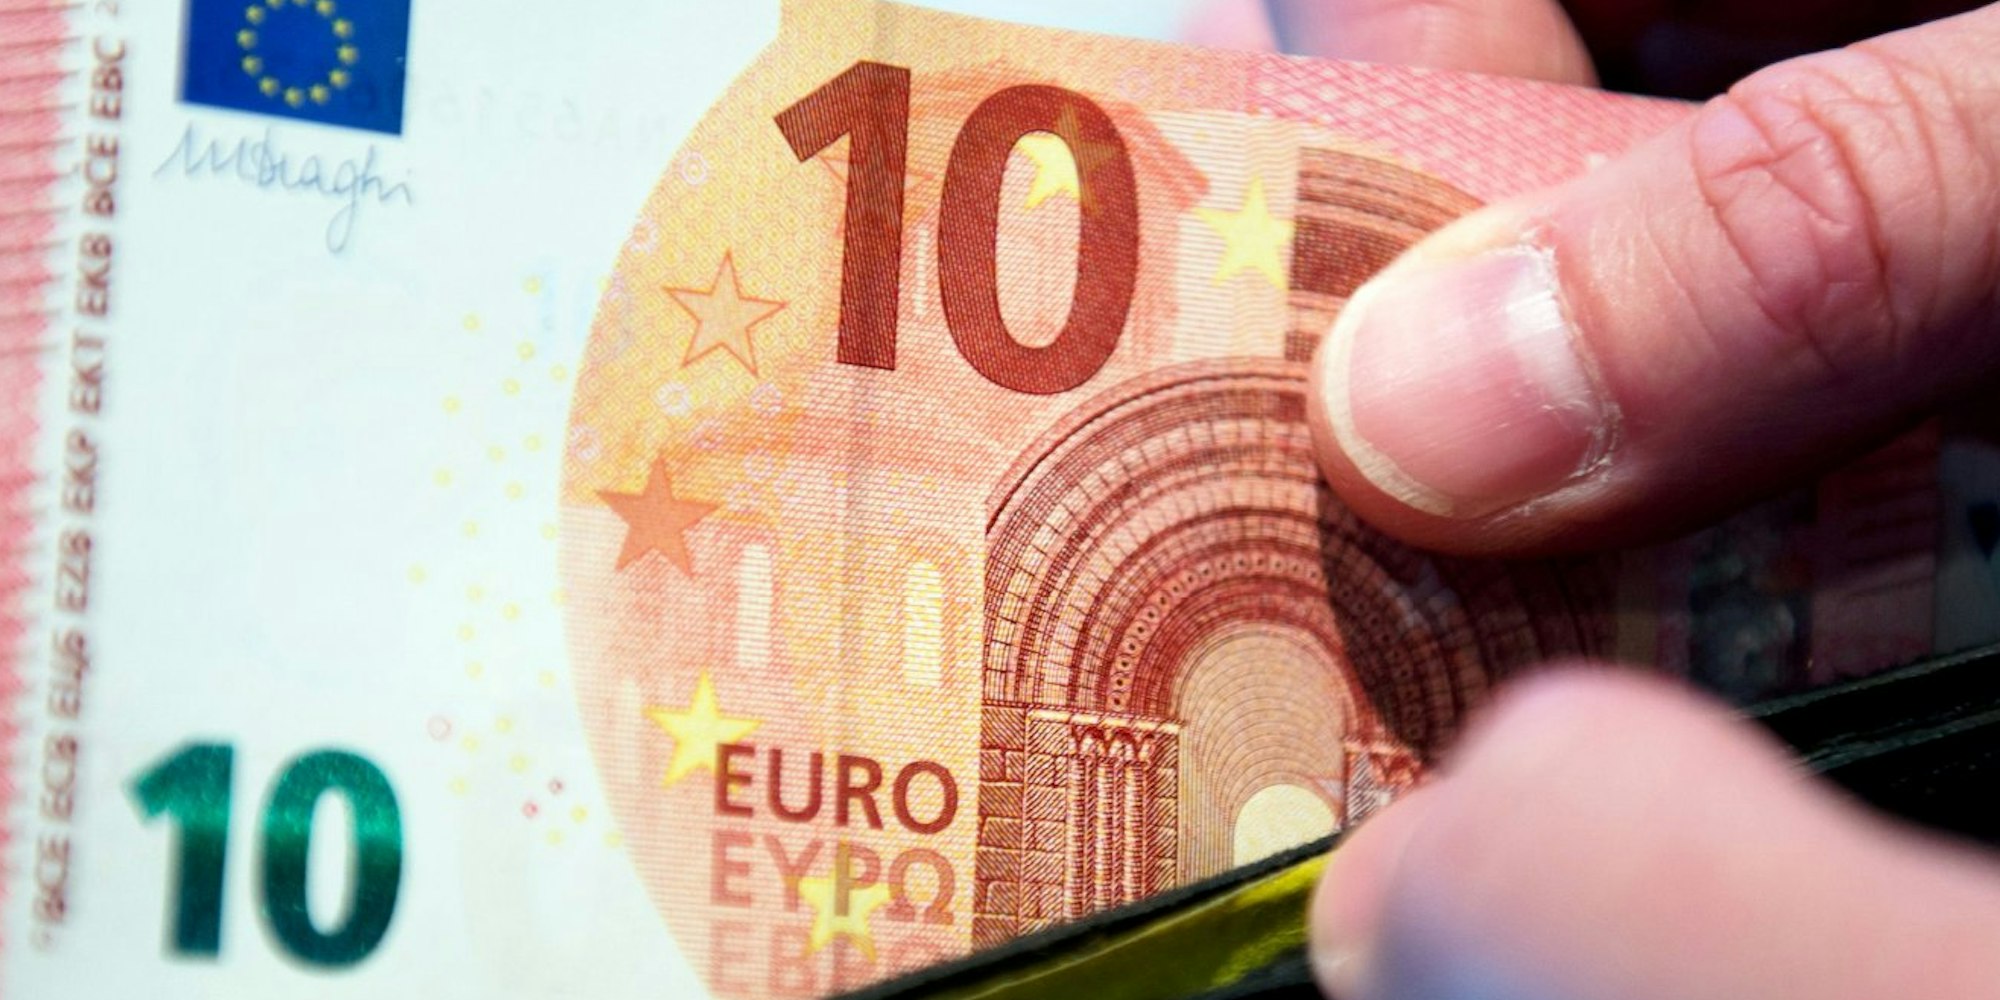 Die neue 10-Euro-Banknote wird ab dem 23. September 2014 in Umlauf gebracht.